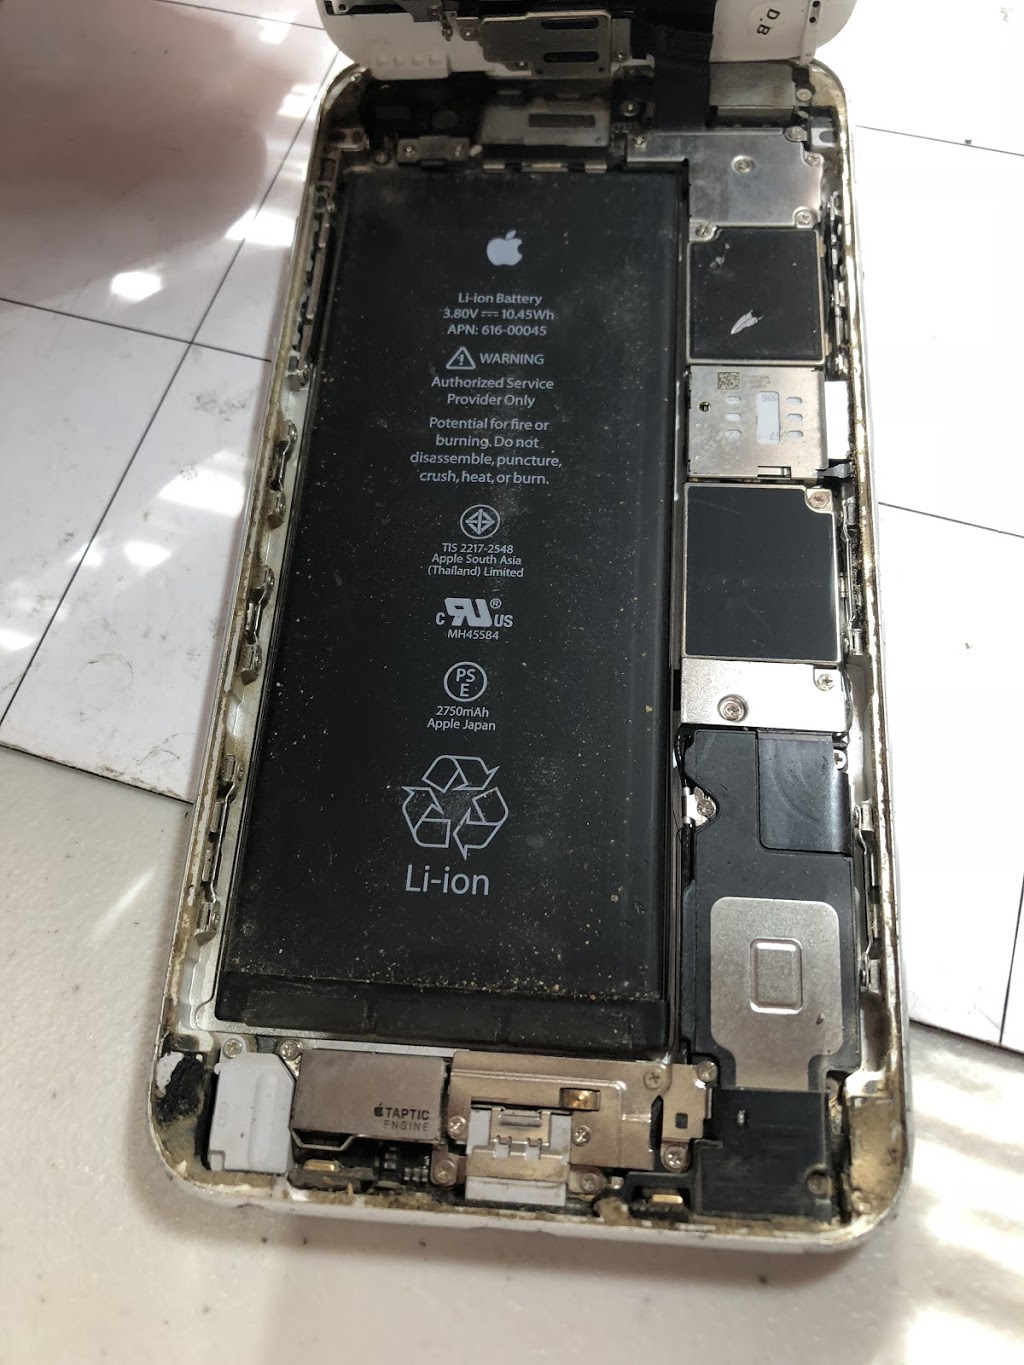 Appleby’s Apple And phone repairs | store | 310 Howitt Street, Ballarat VIC 3350, Australia | 0411239680 OR +61 411 239 680